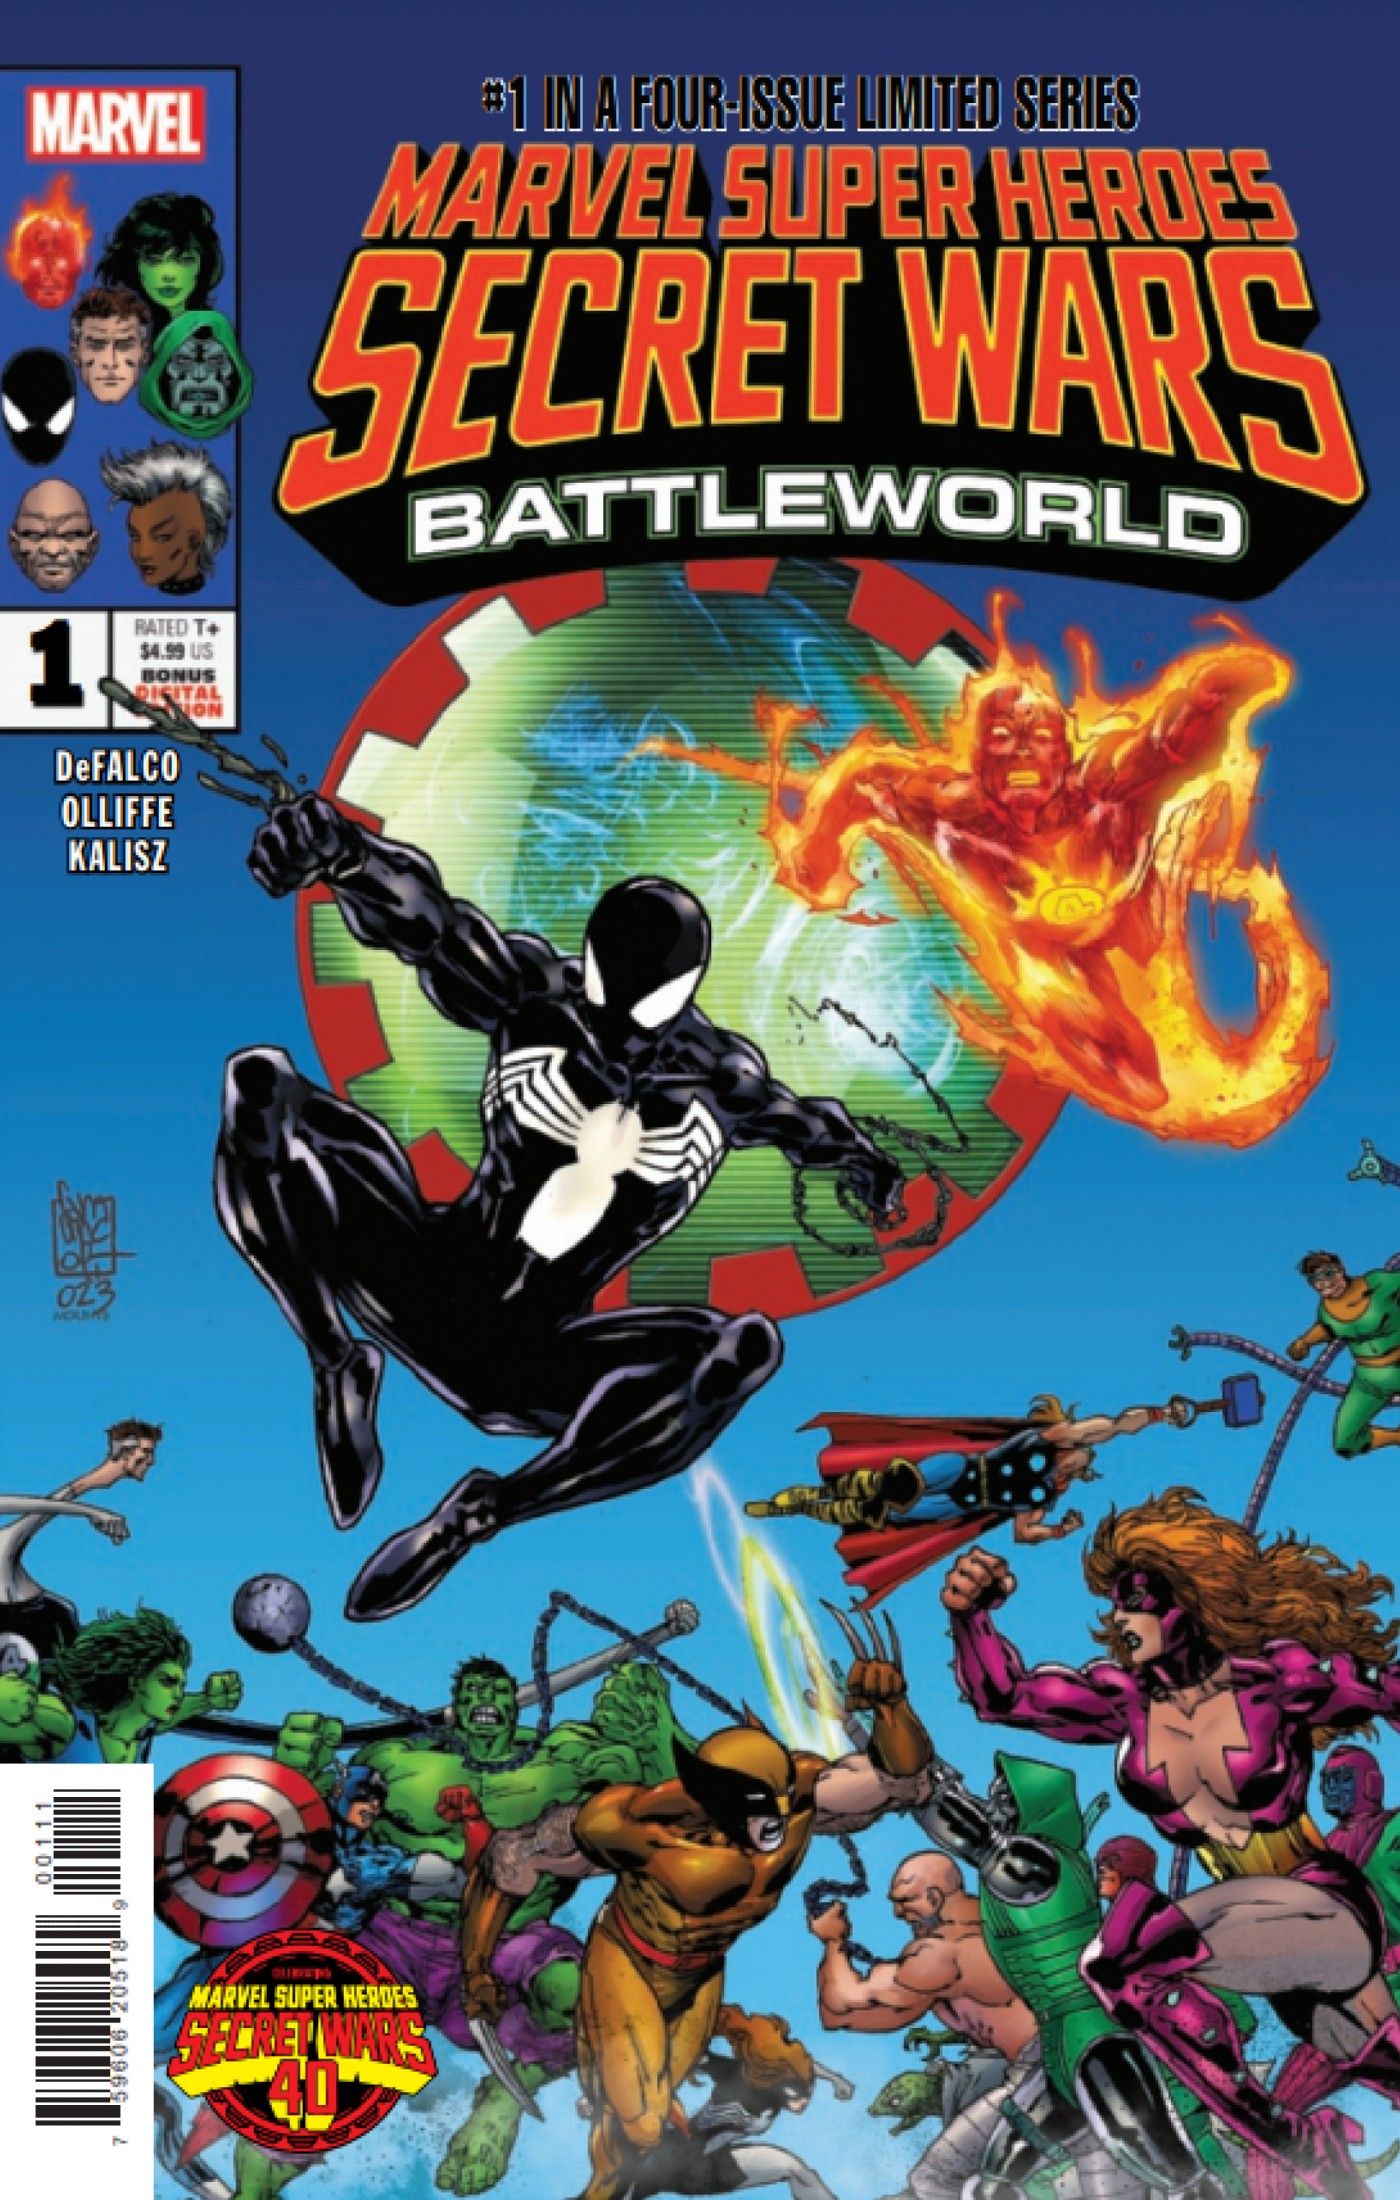 Marvel Super Heroes Secret Wars Battleworld #1 preview-1